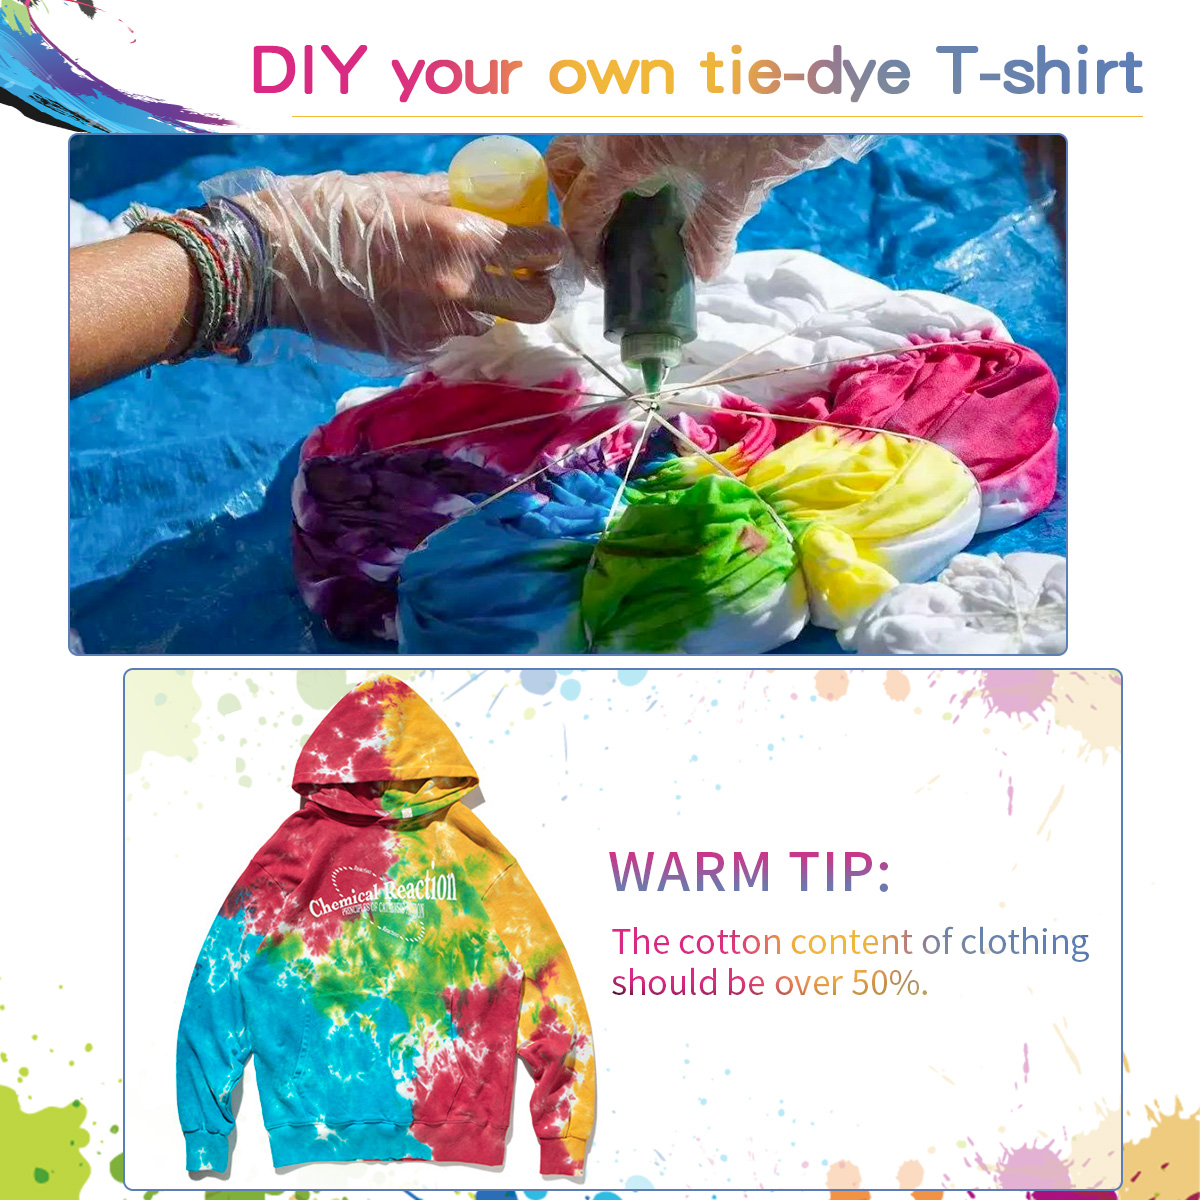 Tie-Dye-DIY-Kit-5-Colors-Fabric-Textile-Shirts-Paints-Permanent-Paint-for-Clothes-Shirt-Dress-Homema-1906746-8